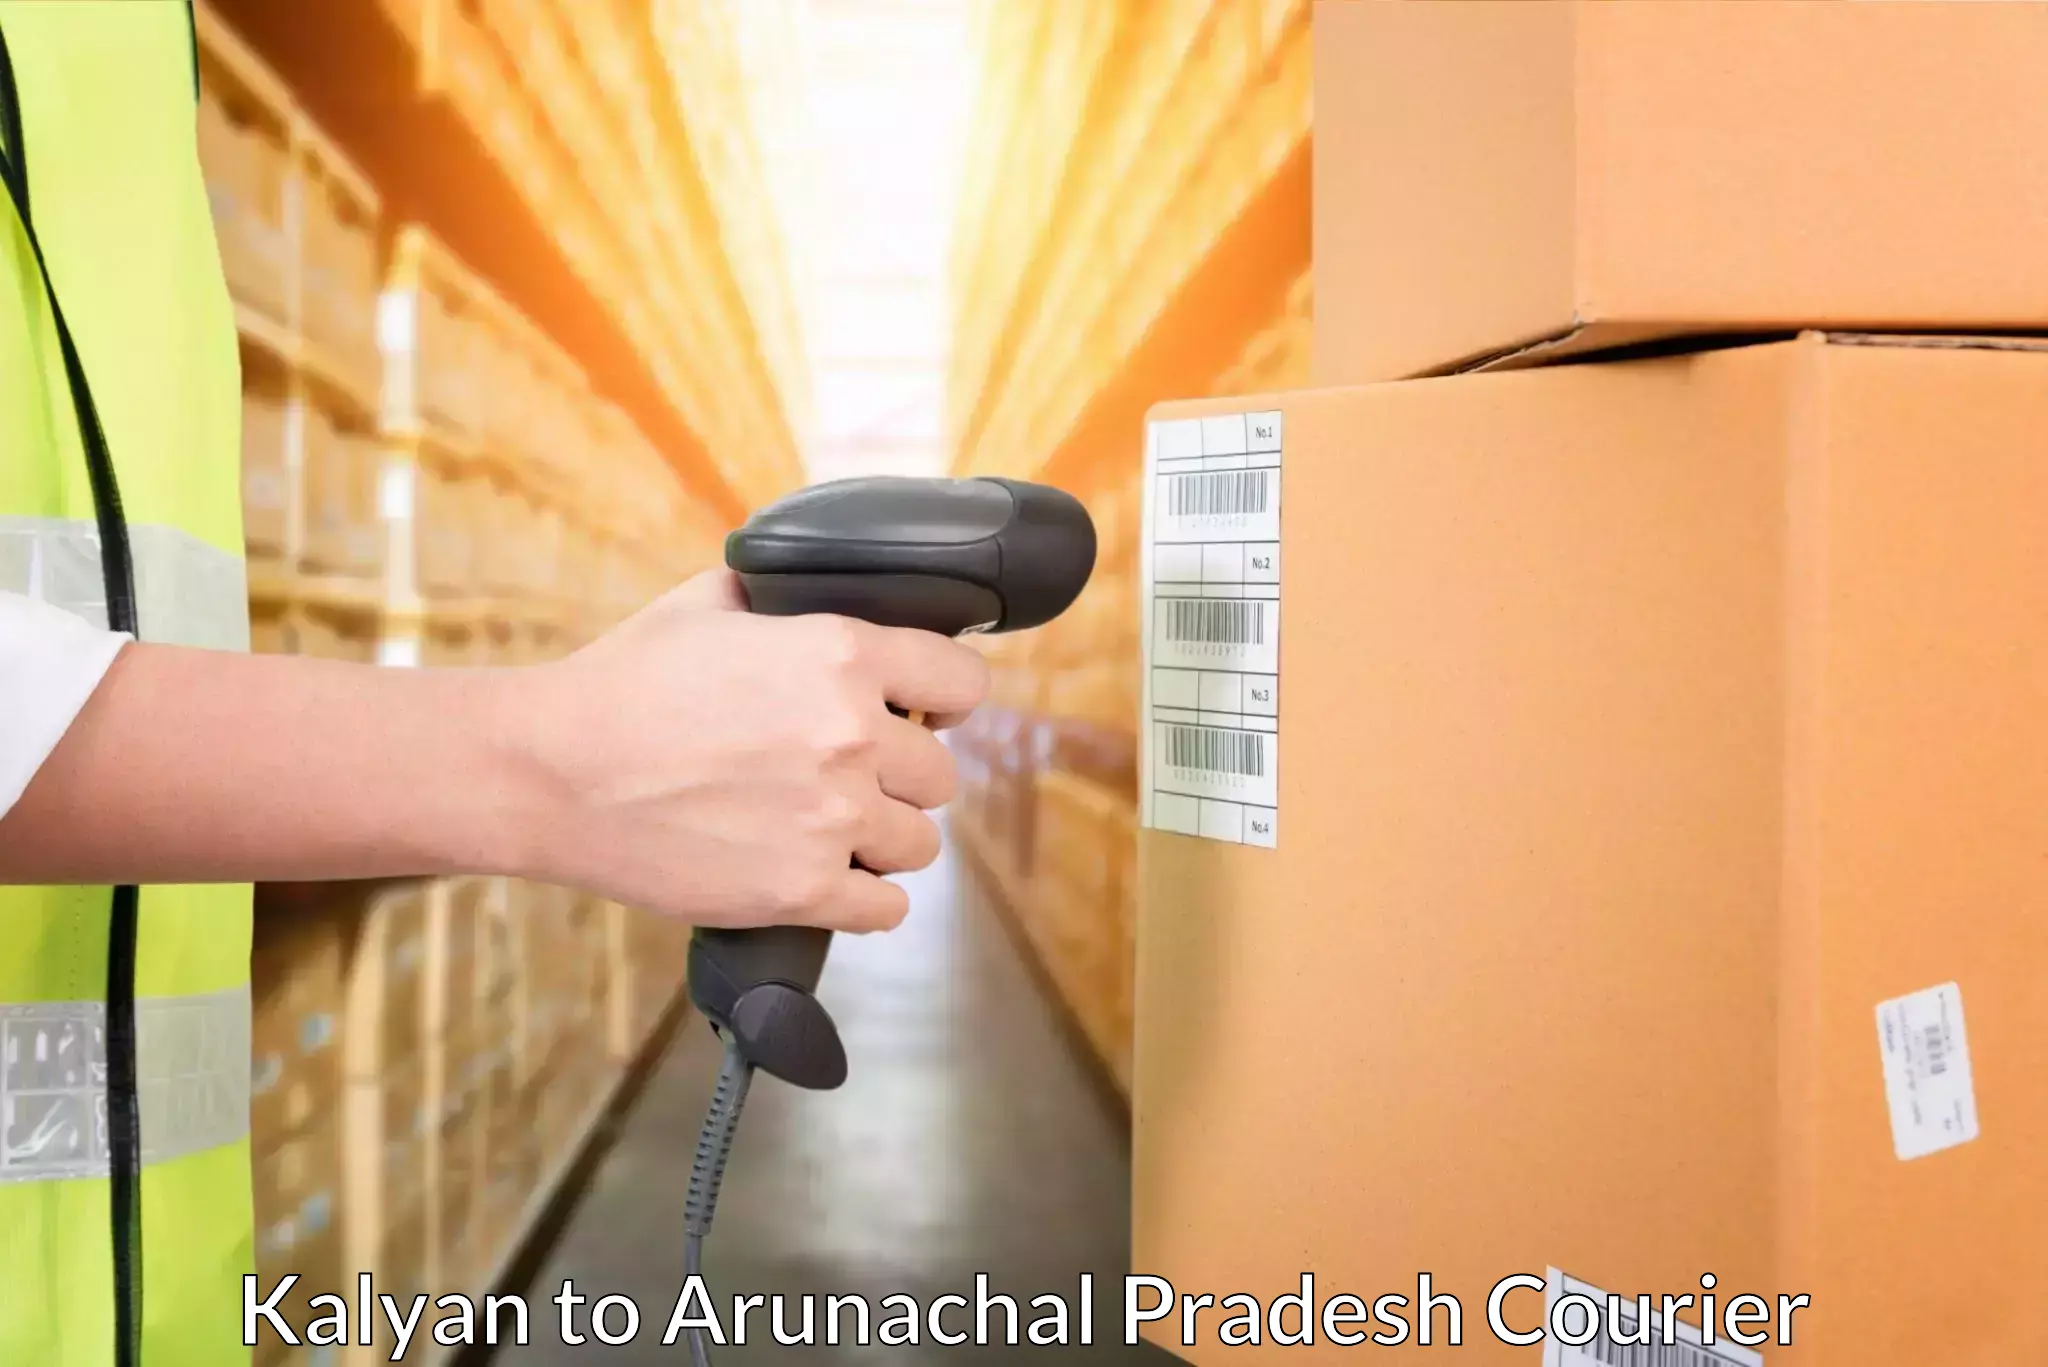 Courier service efficiency in Kalyan to Arunachal Pradesh